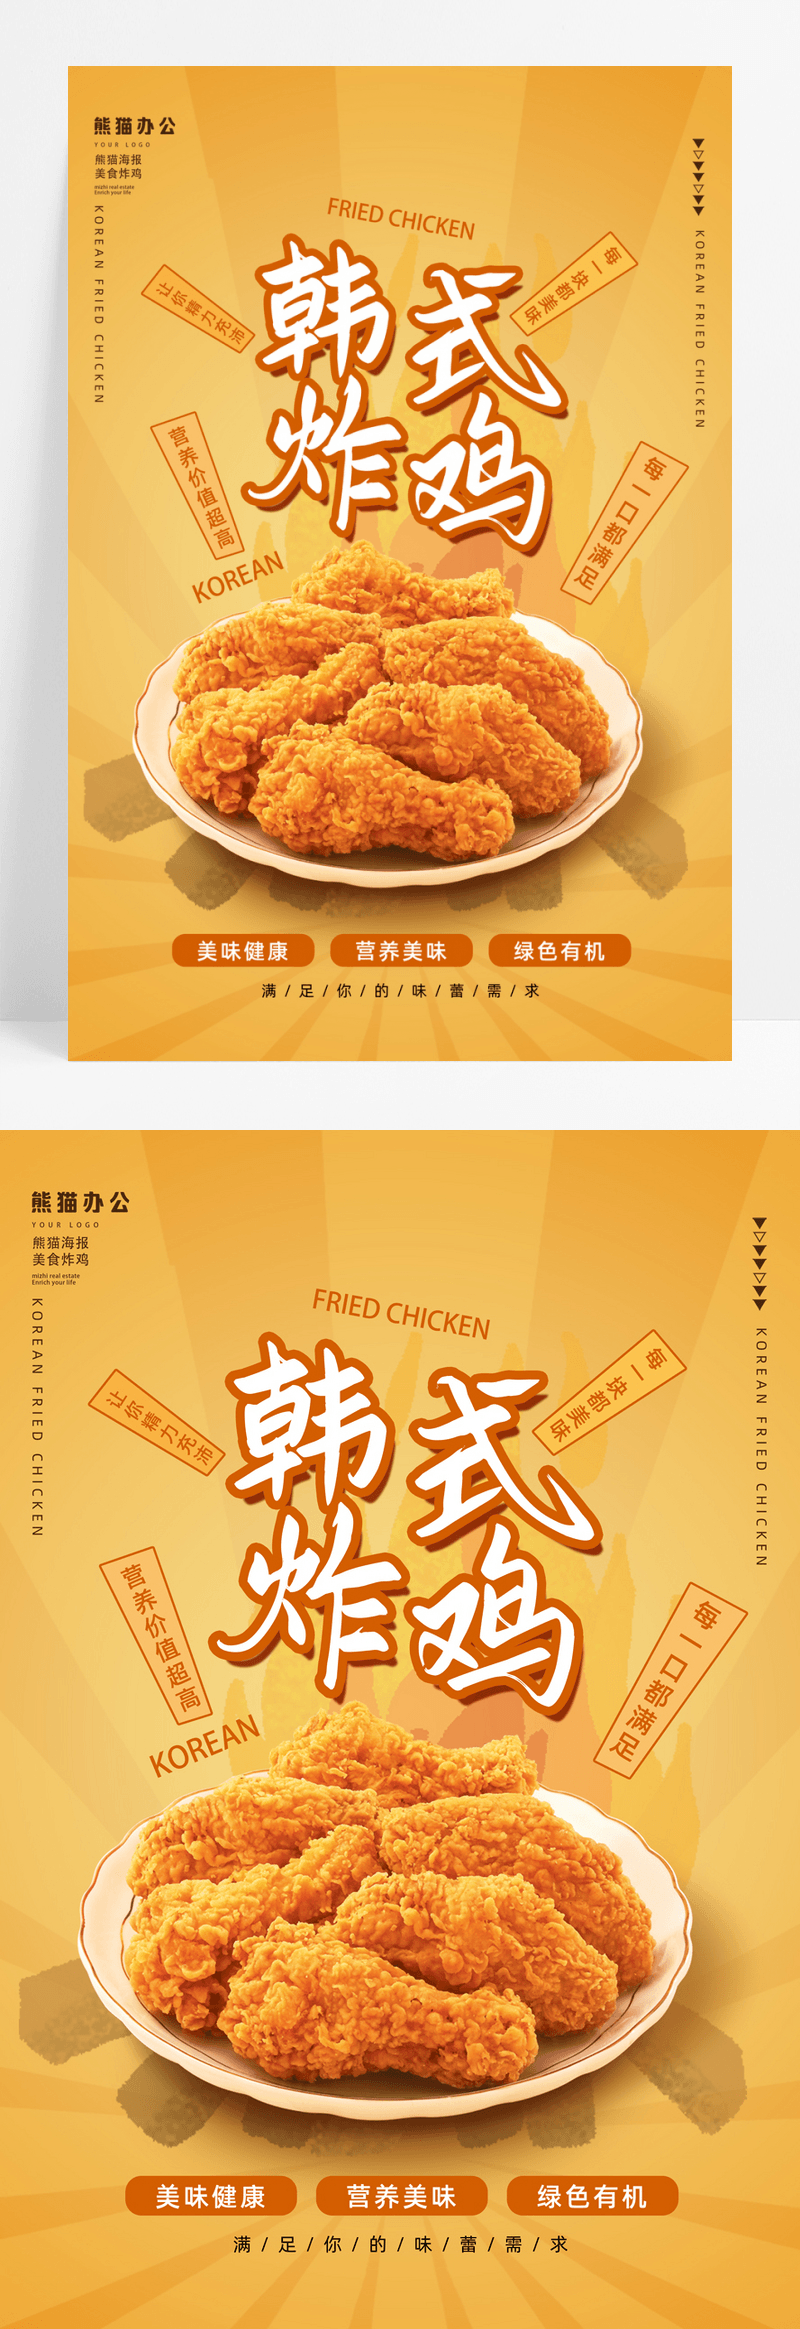 橘色卡通美食韩式炸鸡海报